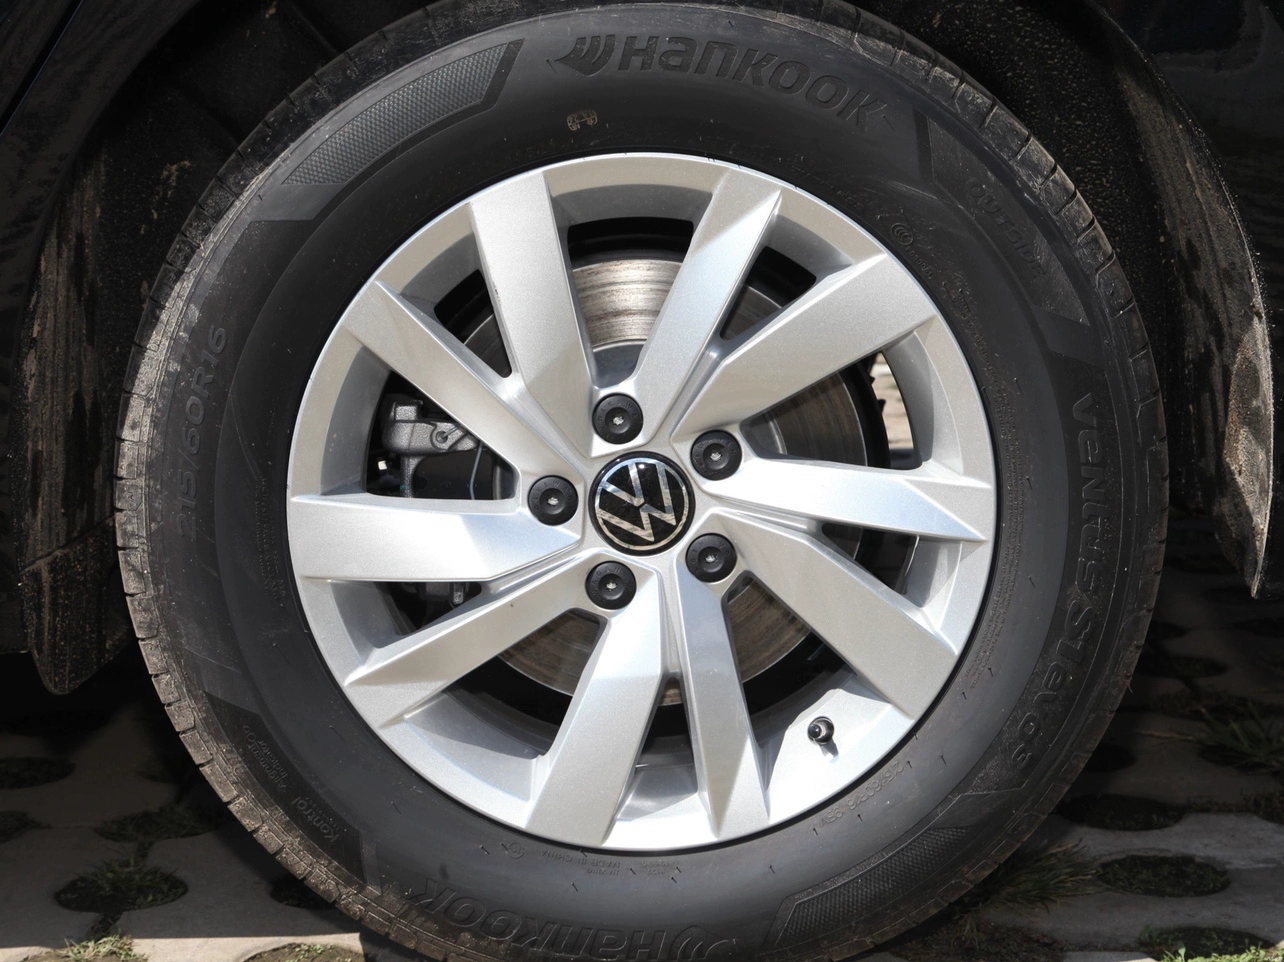 Thích hợp cho 16 17 18 inch Volkswagen Passat phiên bản sang trọng mới bánh xe lưỡi Passat Magotan Lavida/Huian mâm xe oto lazang 16 inch Mâm xe